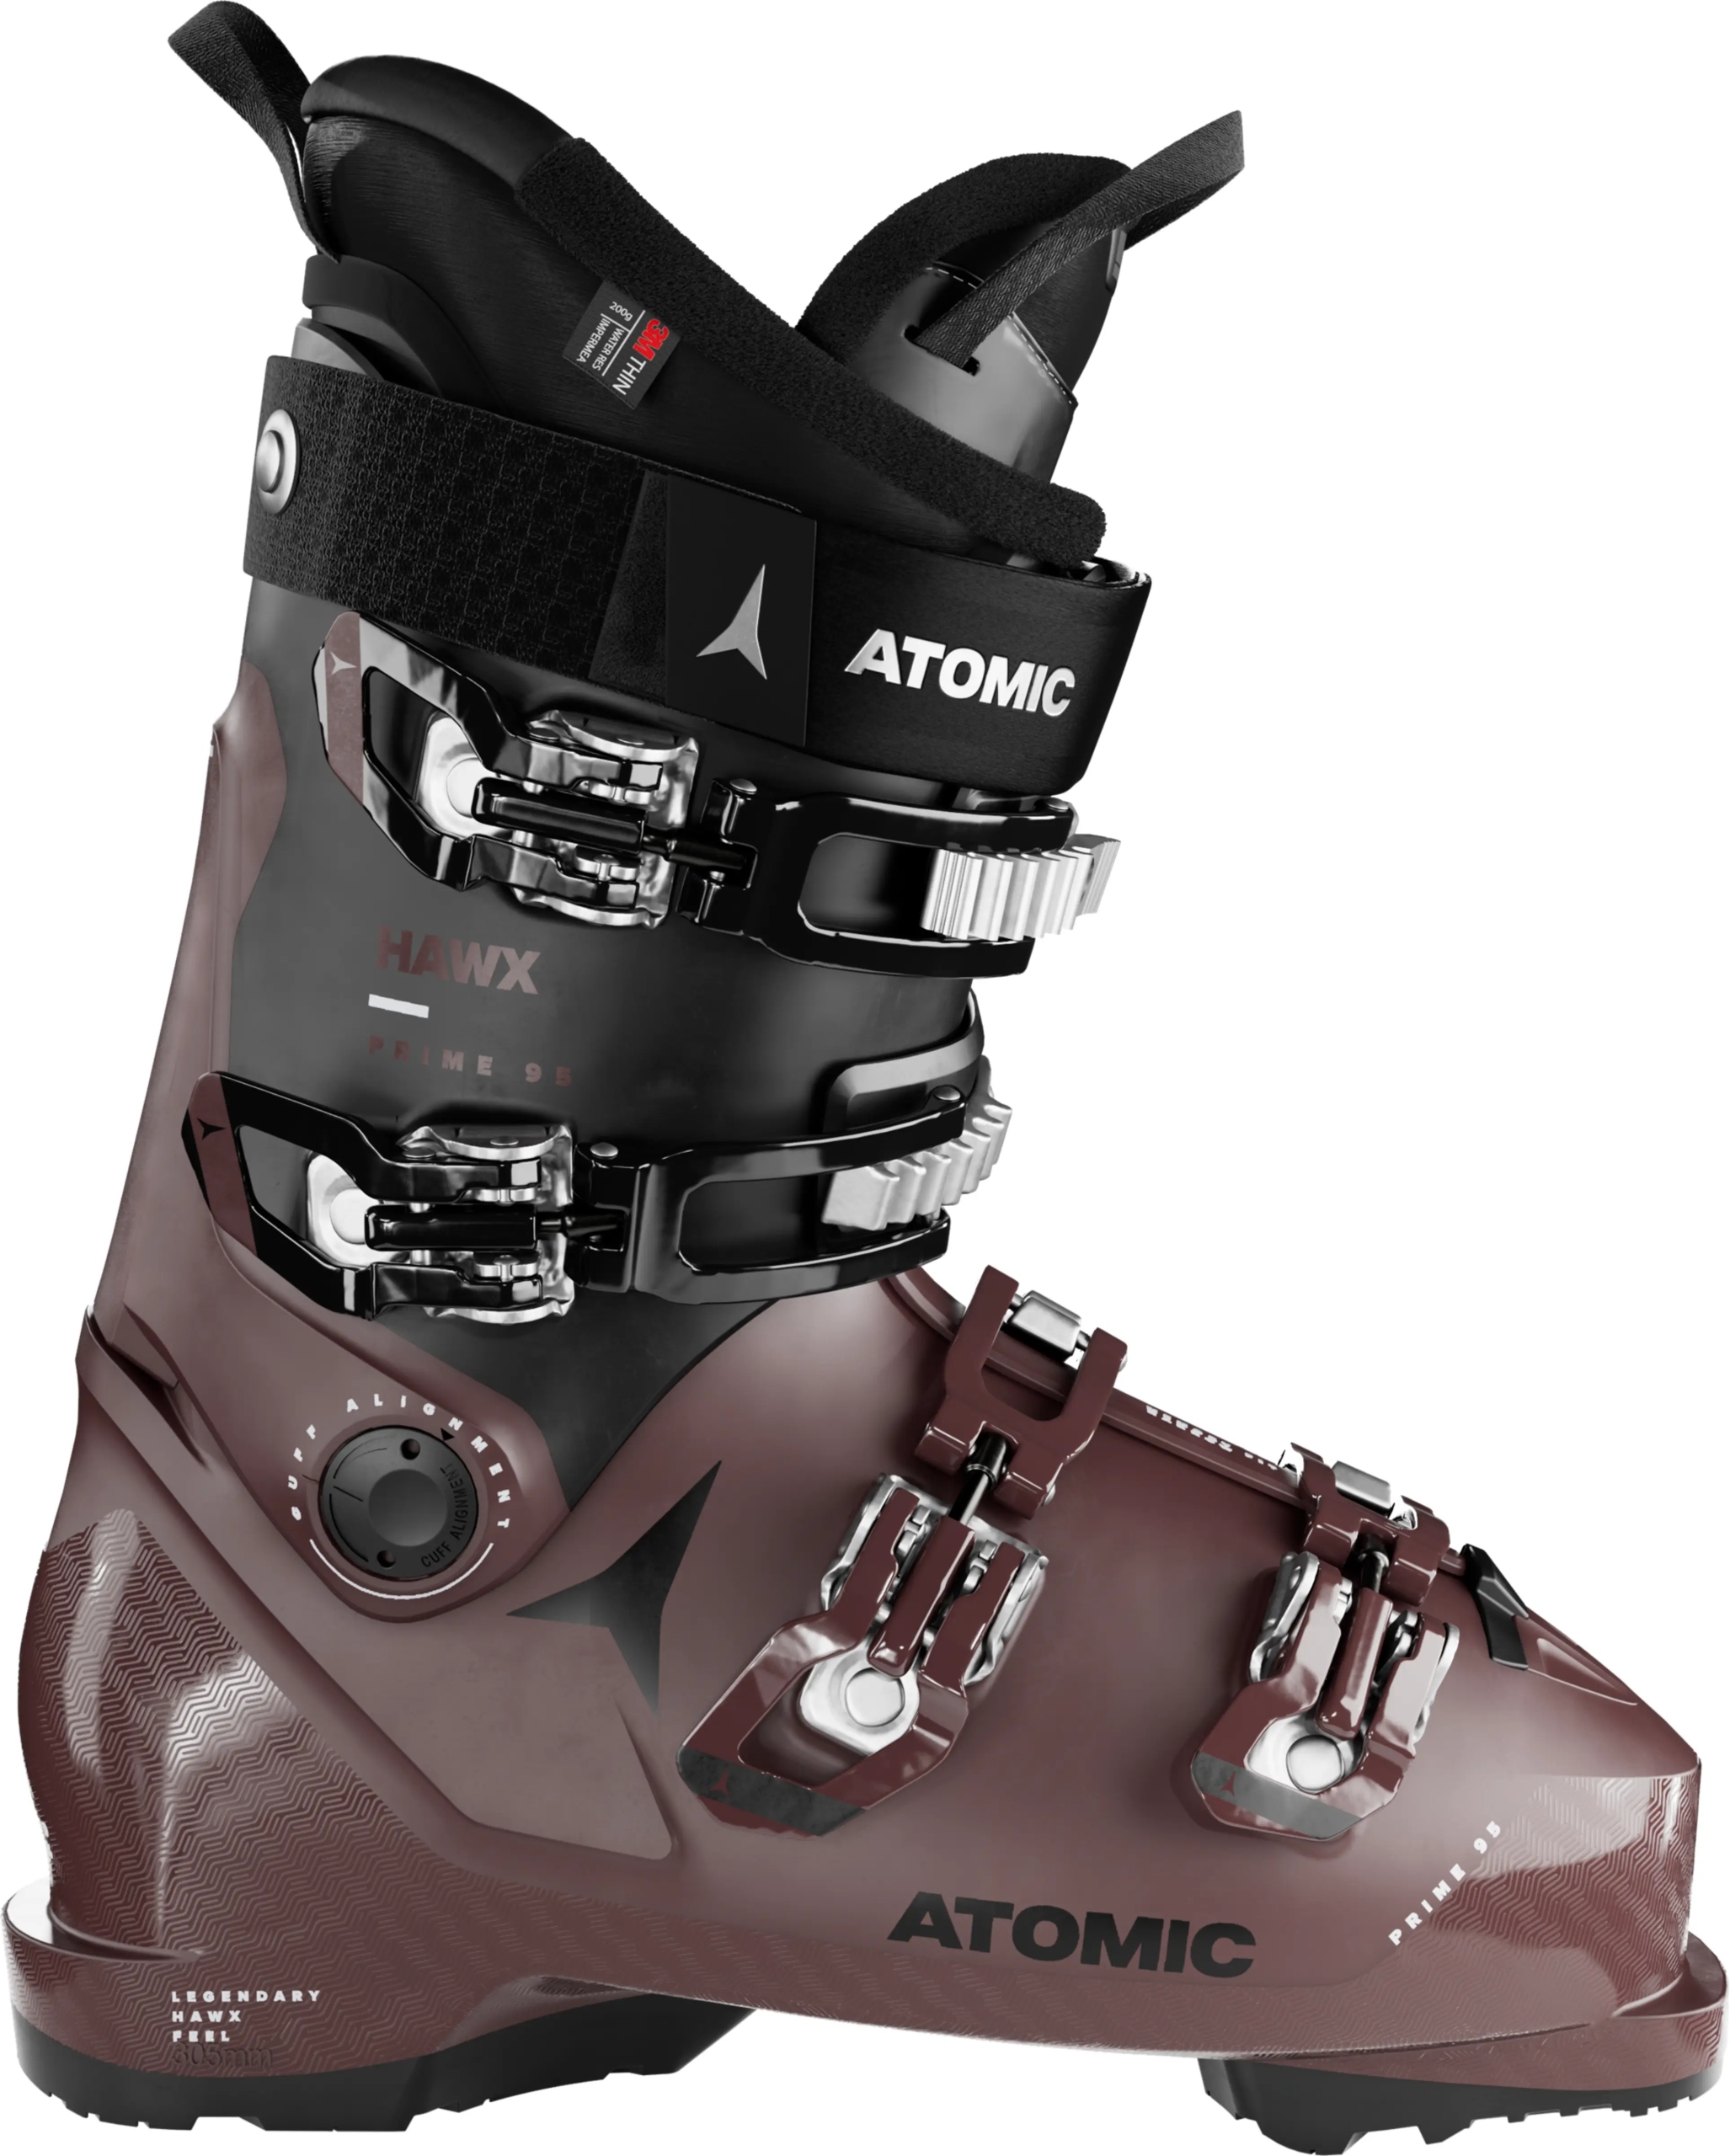 Topánky Atomic Hawx Prime 95 (B100) (Veľkosť: 24,5; K